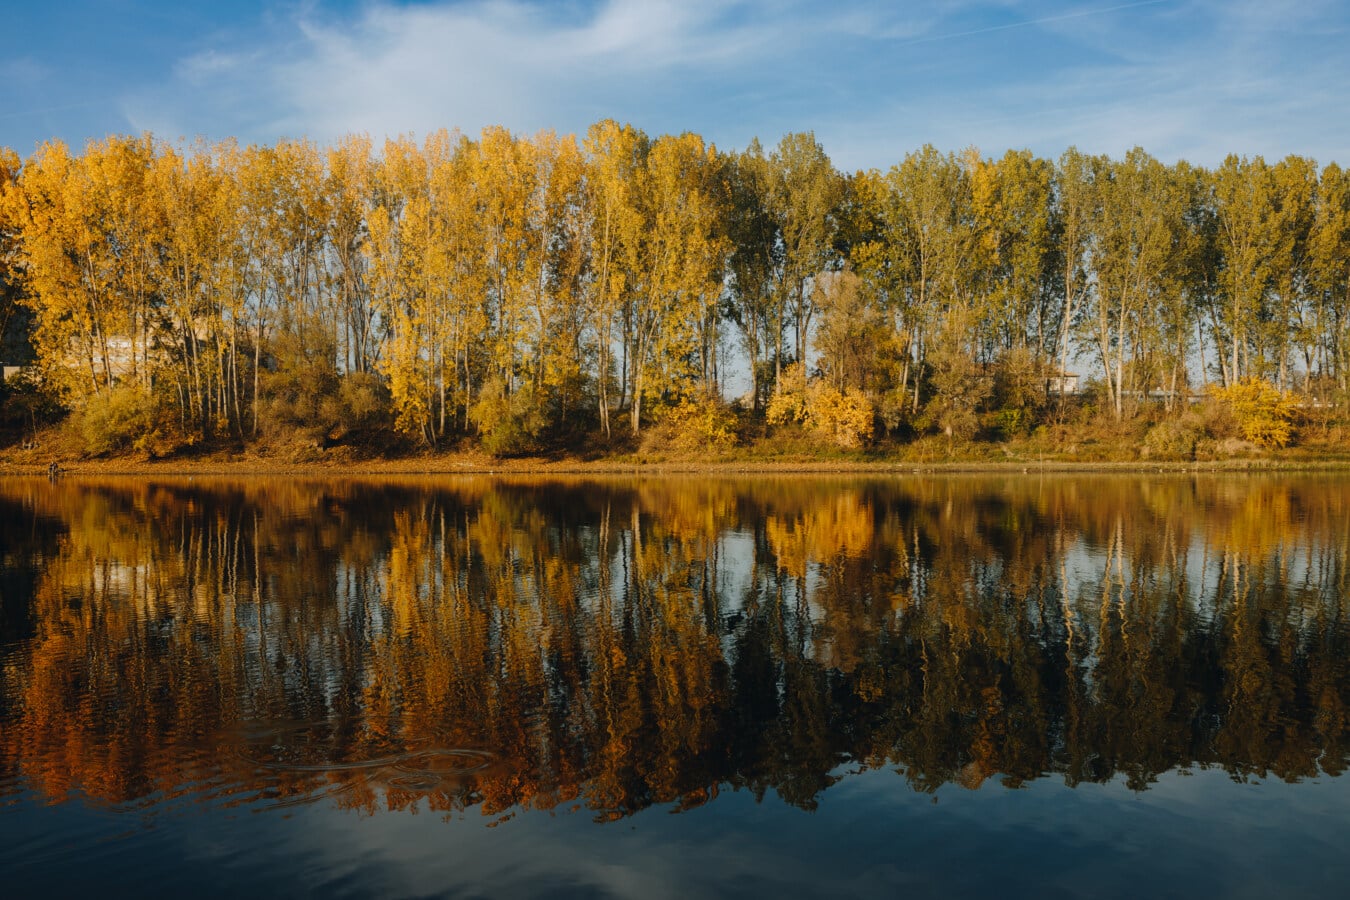 Herbst, am See, idyllisch, ruhig, Bäume, blauer Himmel, Reflexion, Wasser, Landschaft, See